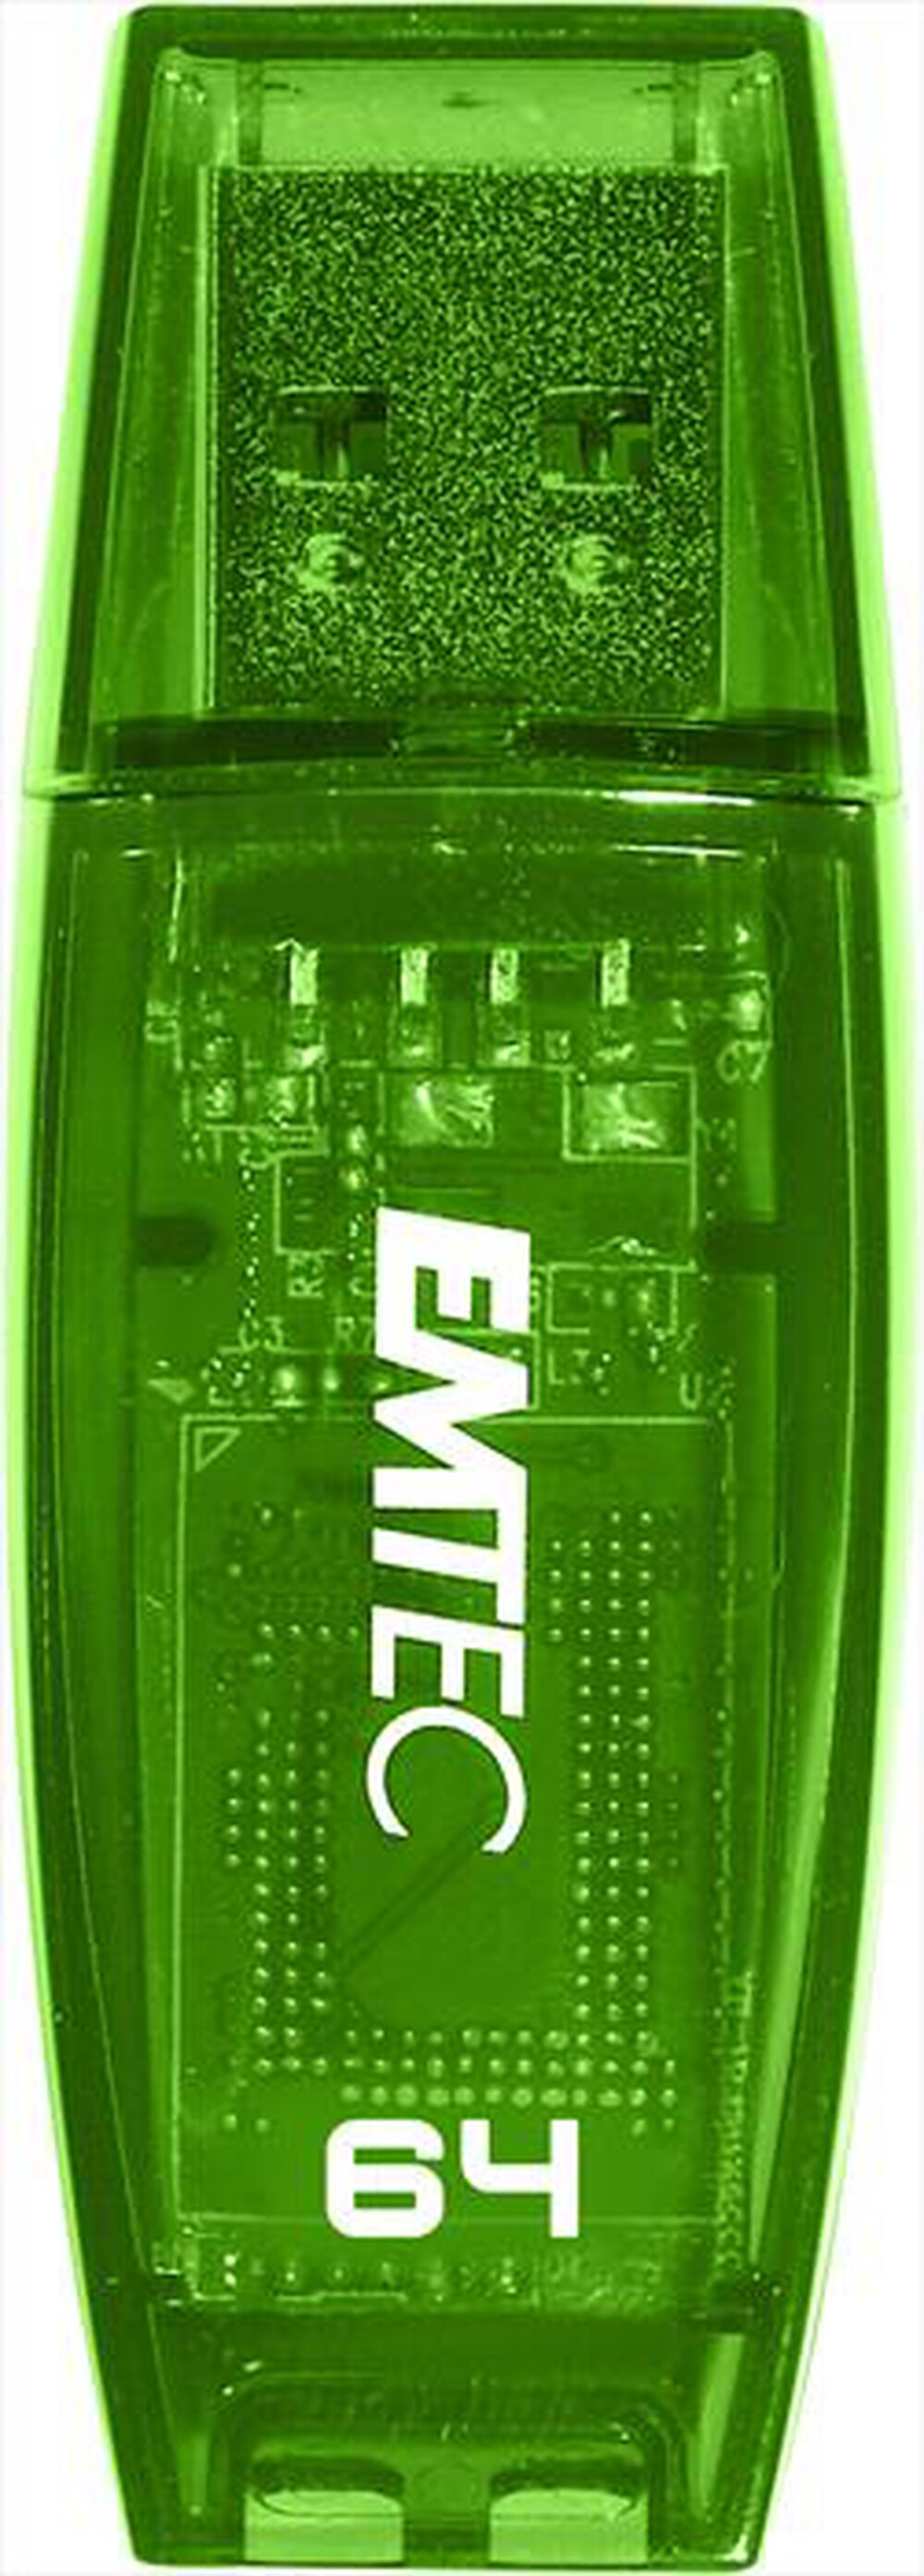 "EMTEC - COLOR MIX C410 64GB USB2.0-Verde"